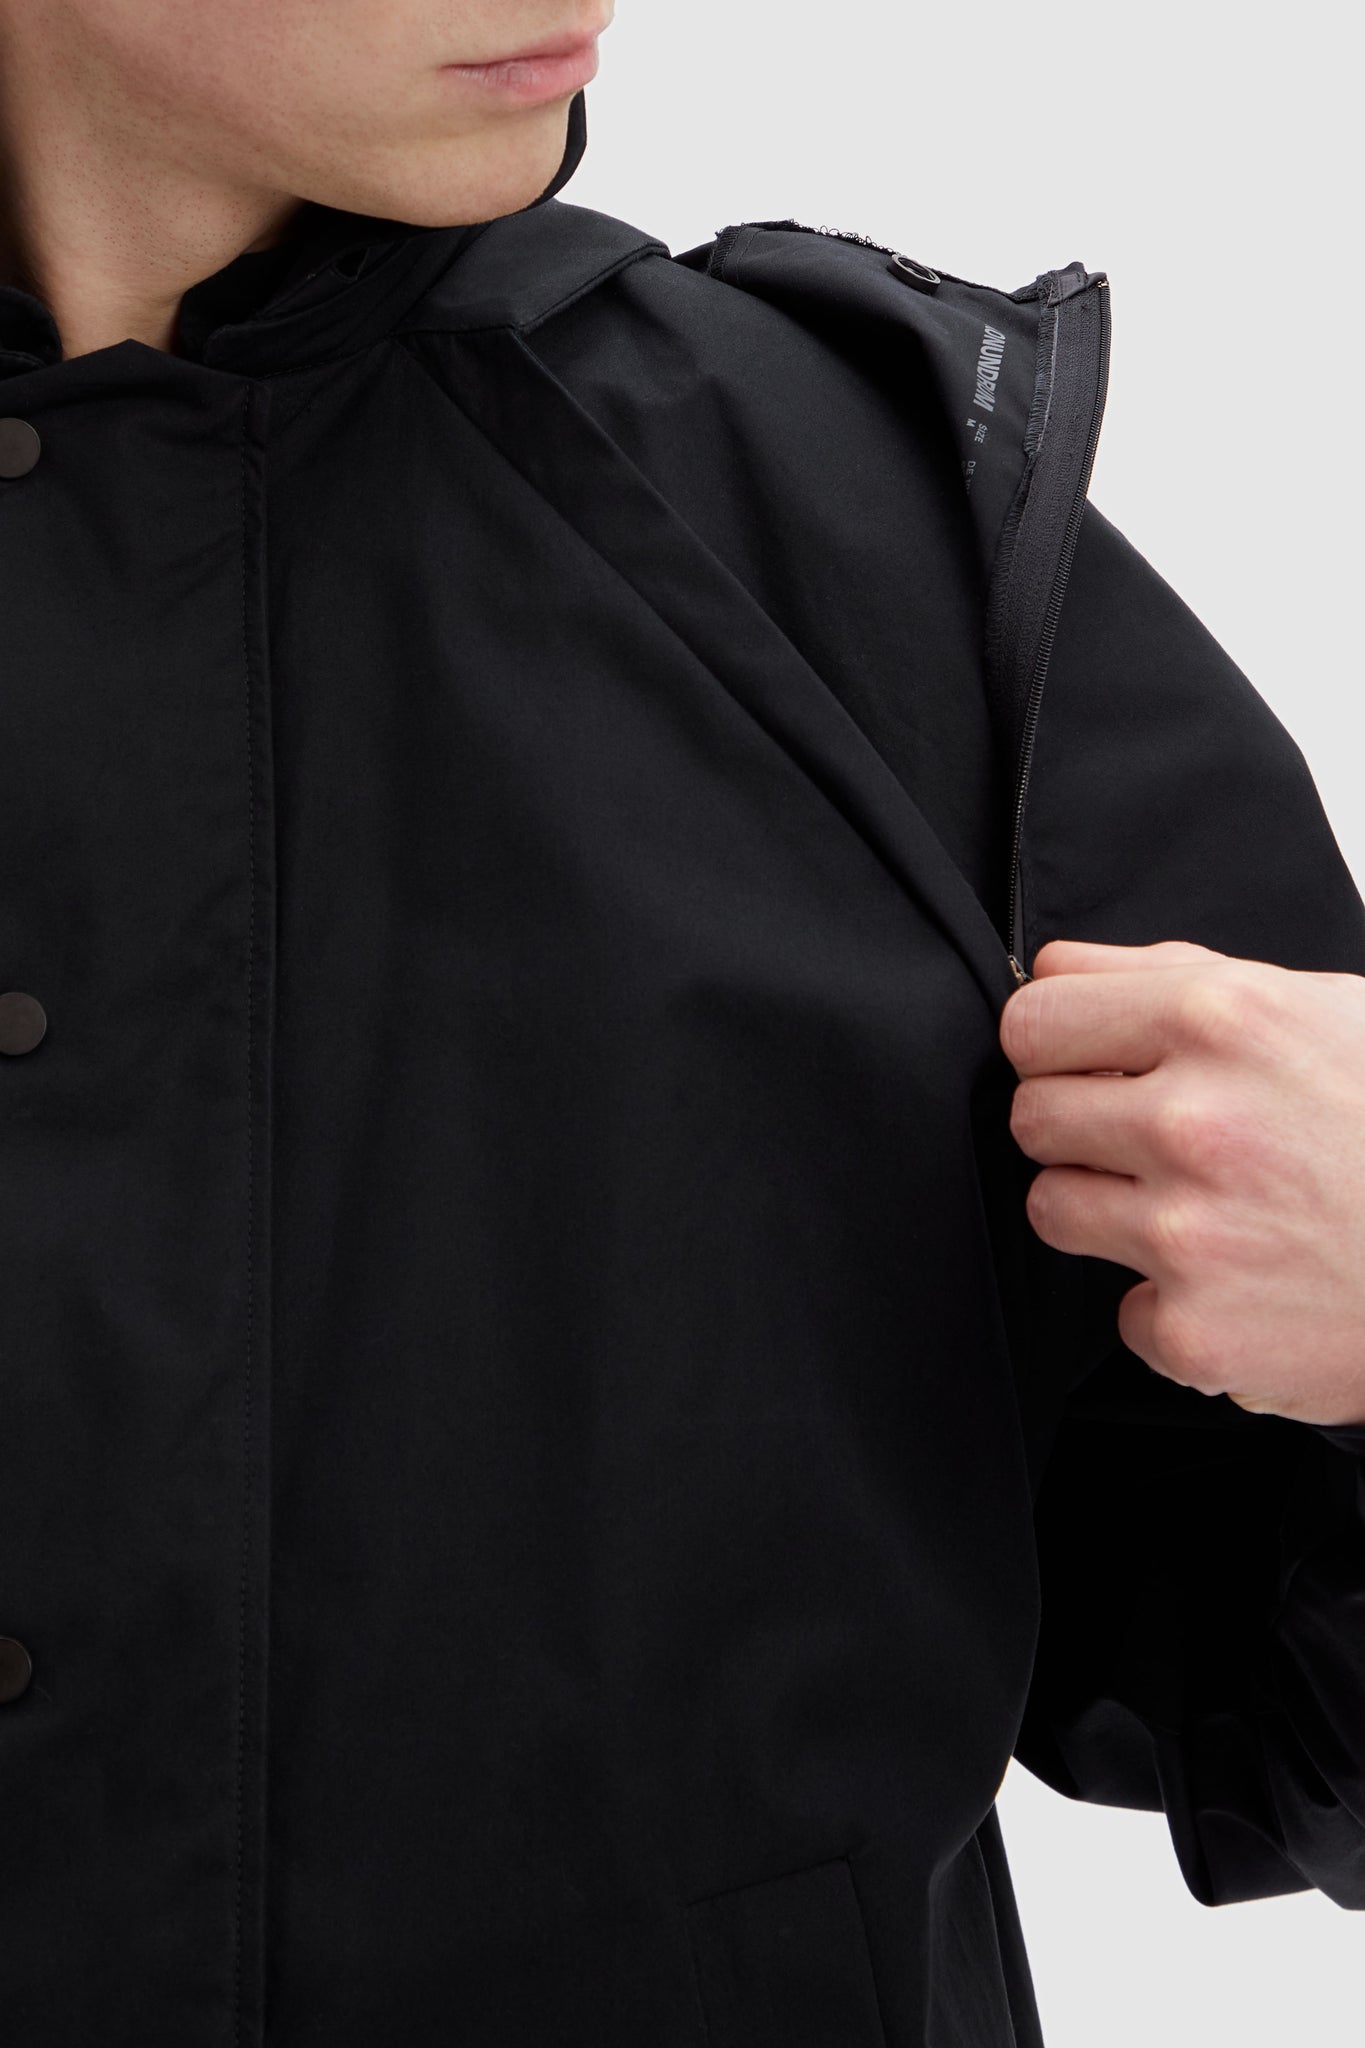 100% Organic Cotton Jacket in colour black Modular jacket detail